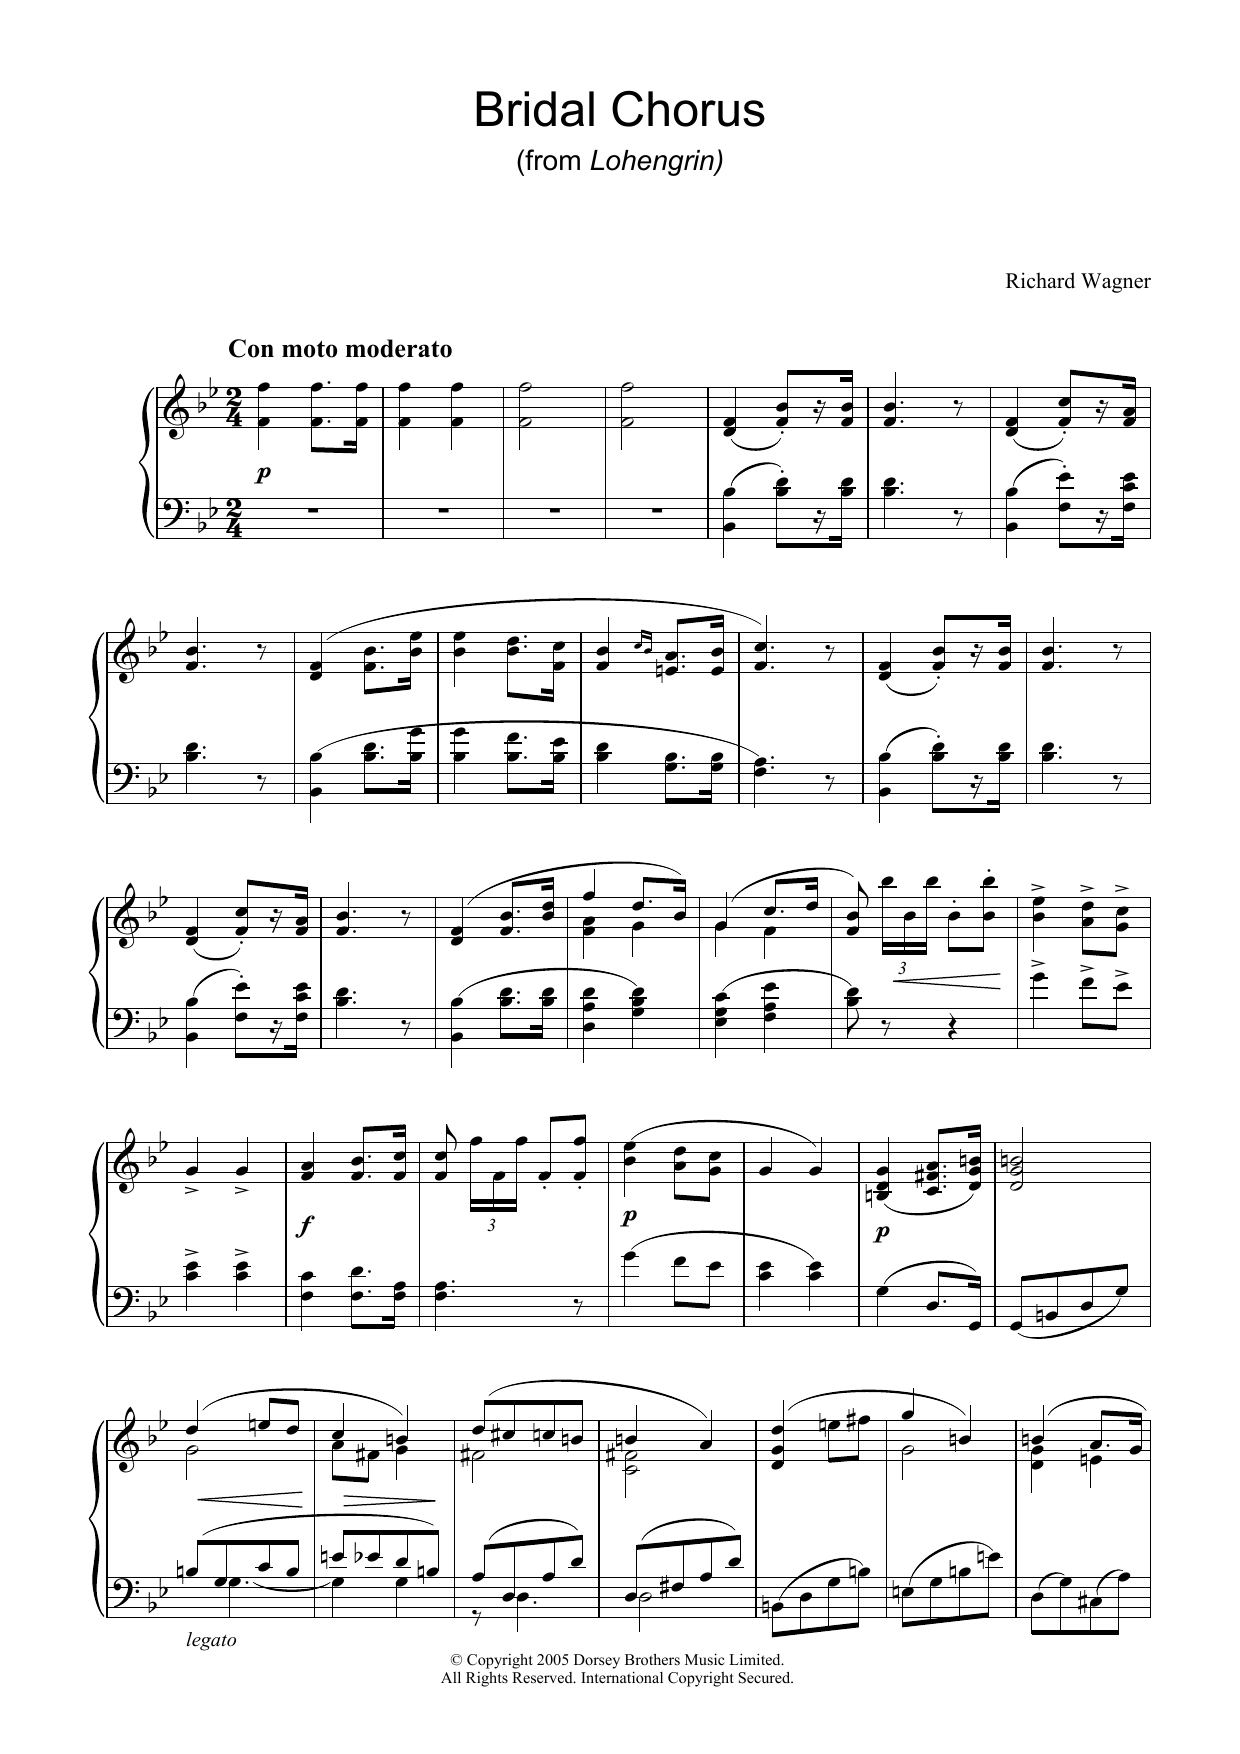 Download Richard Wagner Bridal Chorus (from Lohengrin) Sheet Music